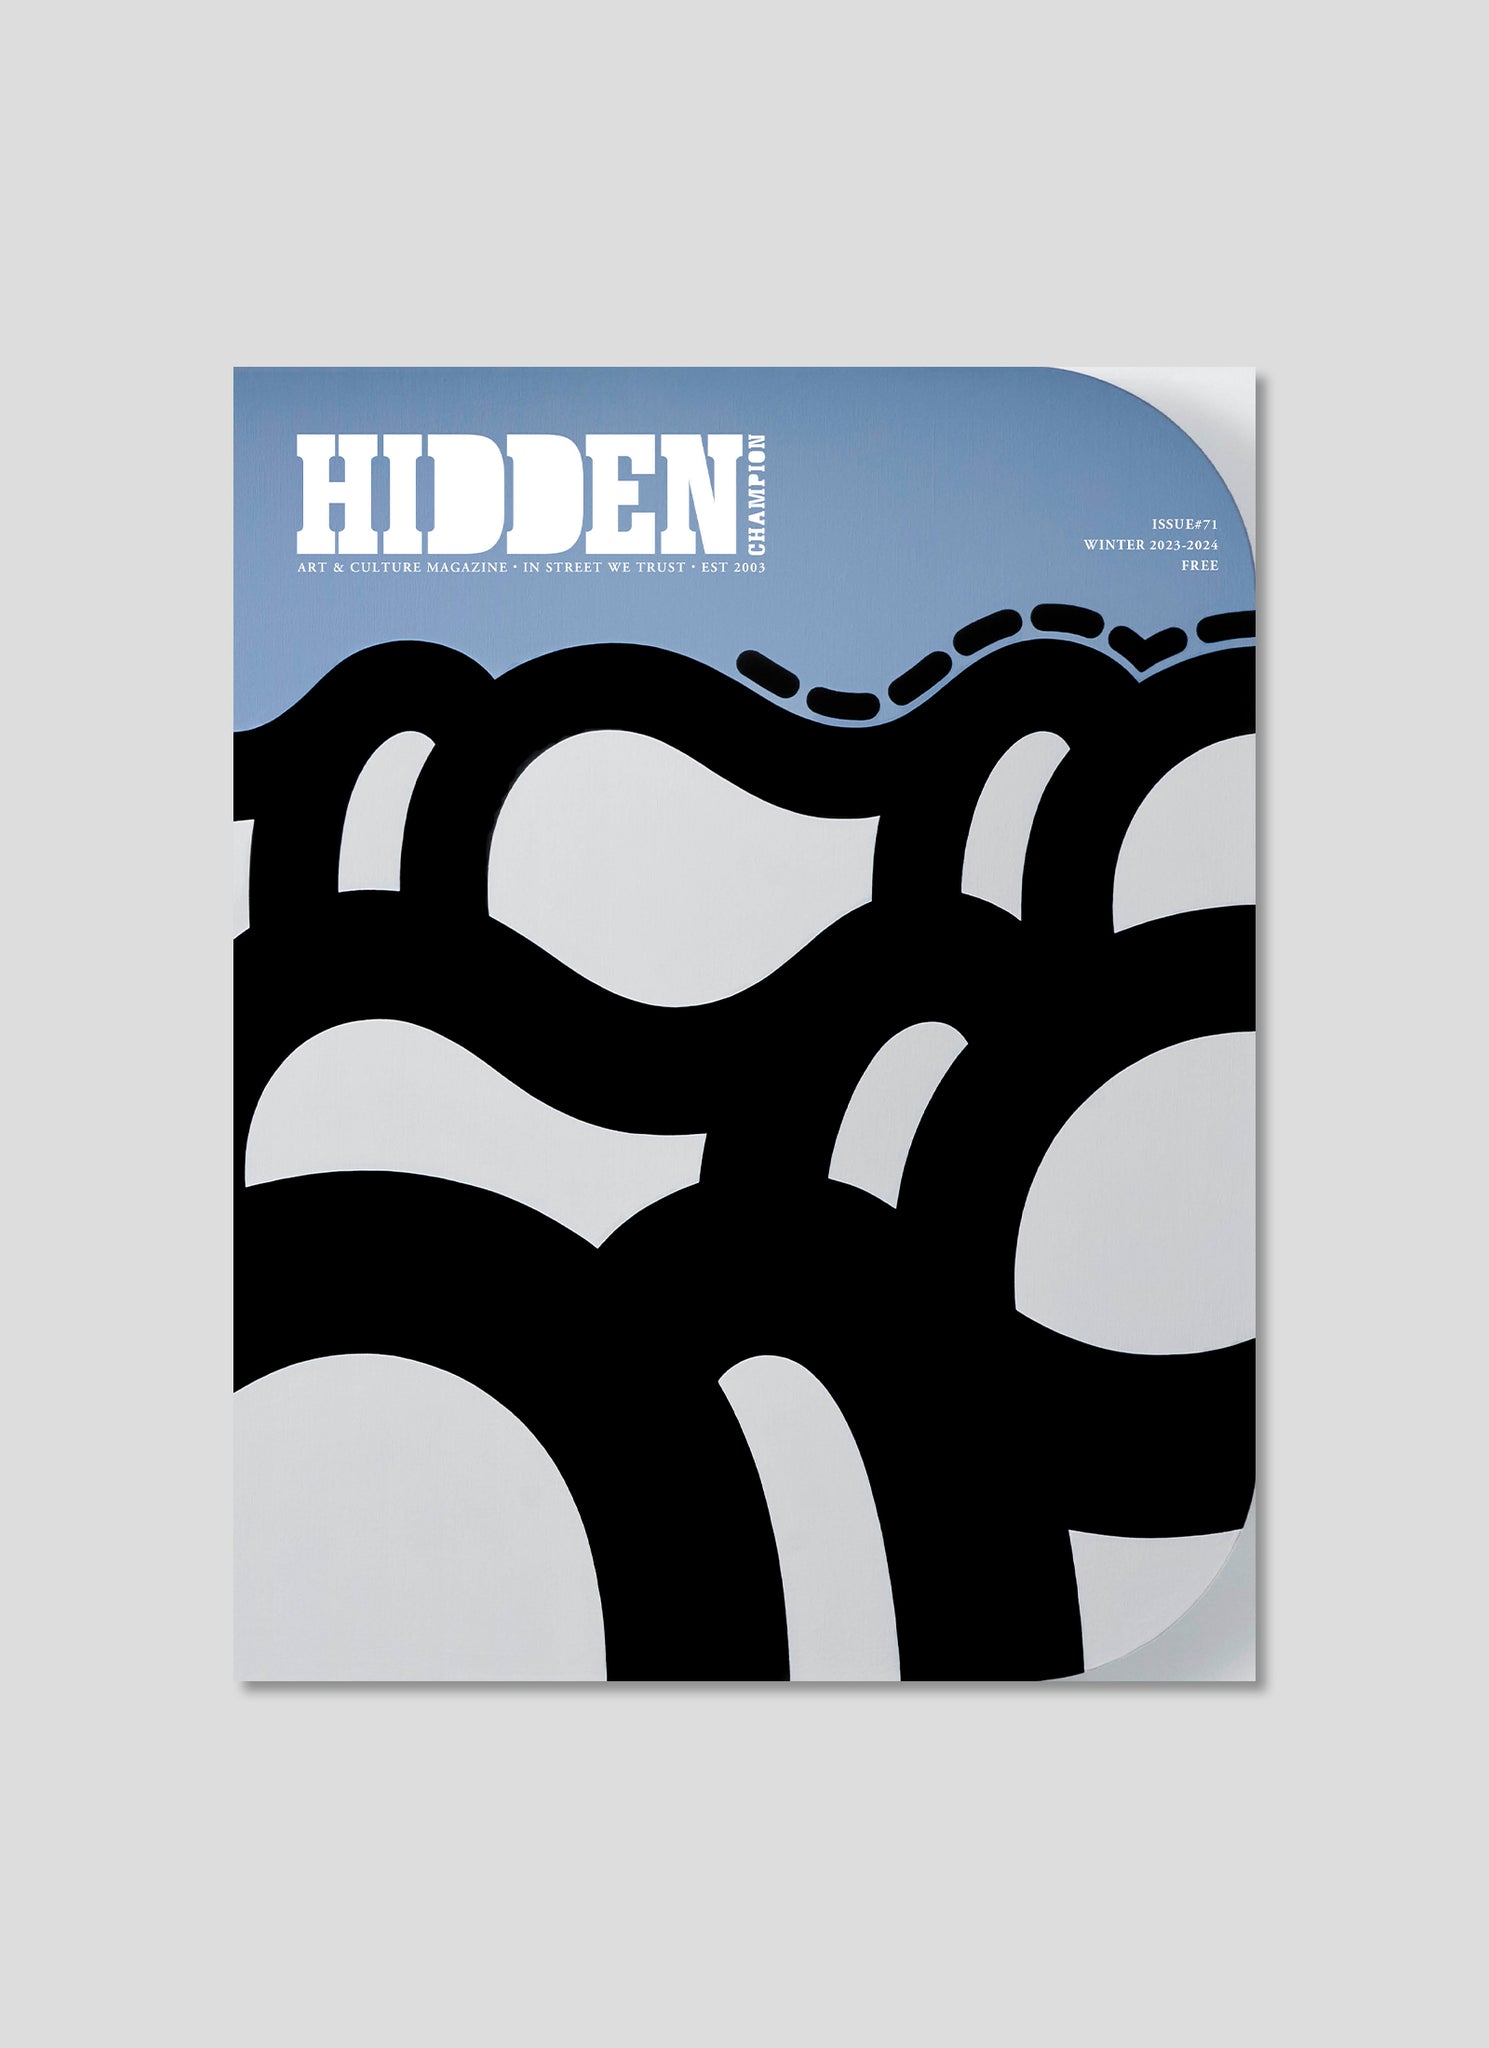 HIDDEN CHAMPION Issue#71